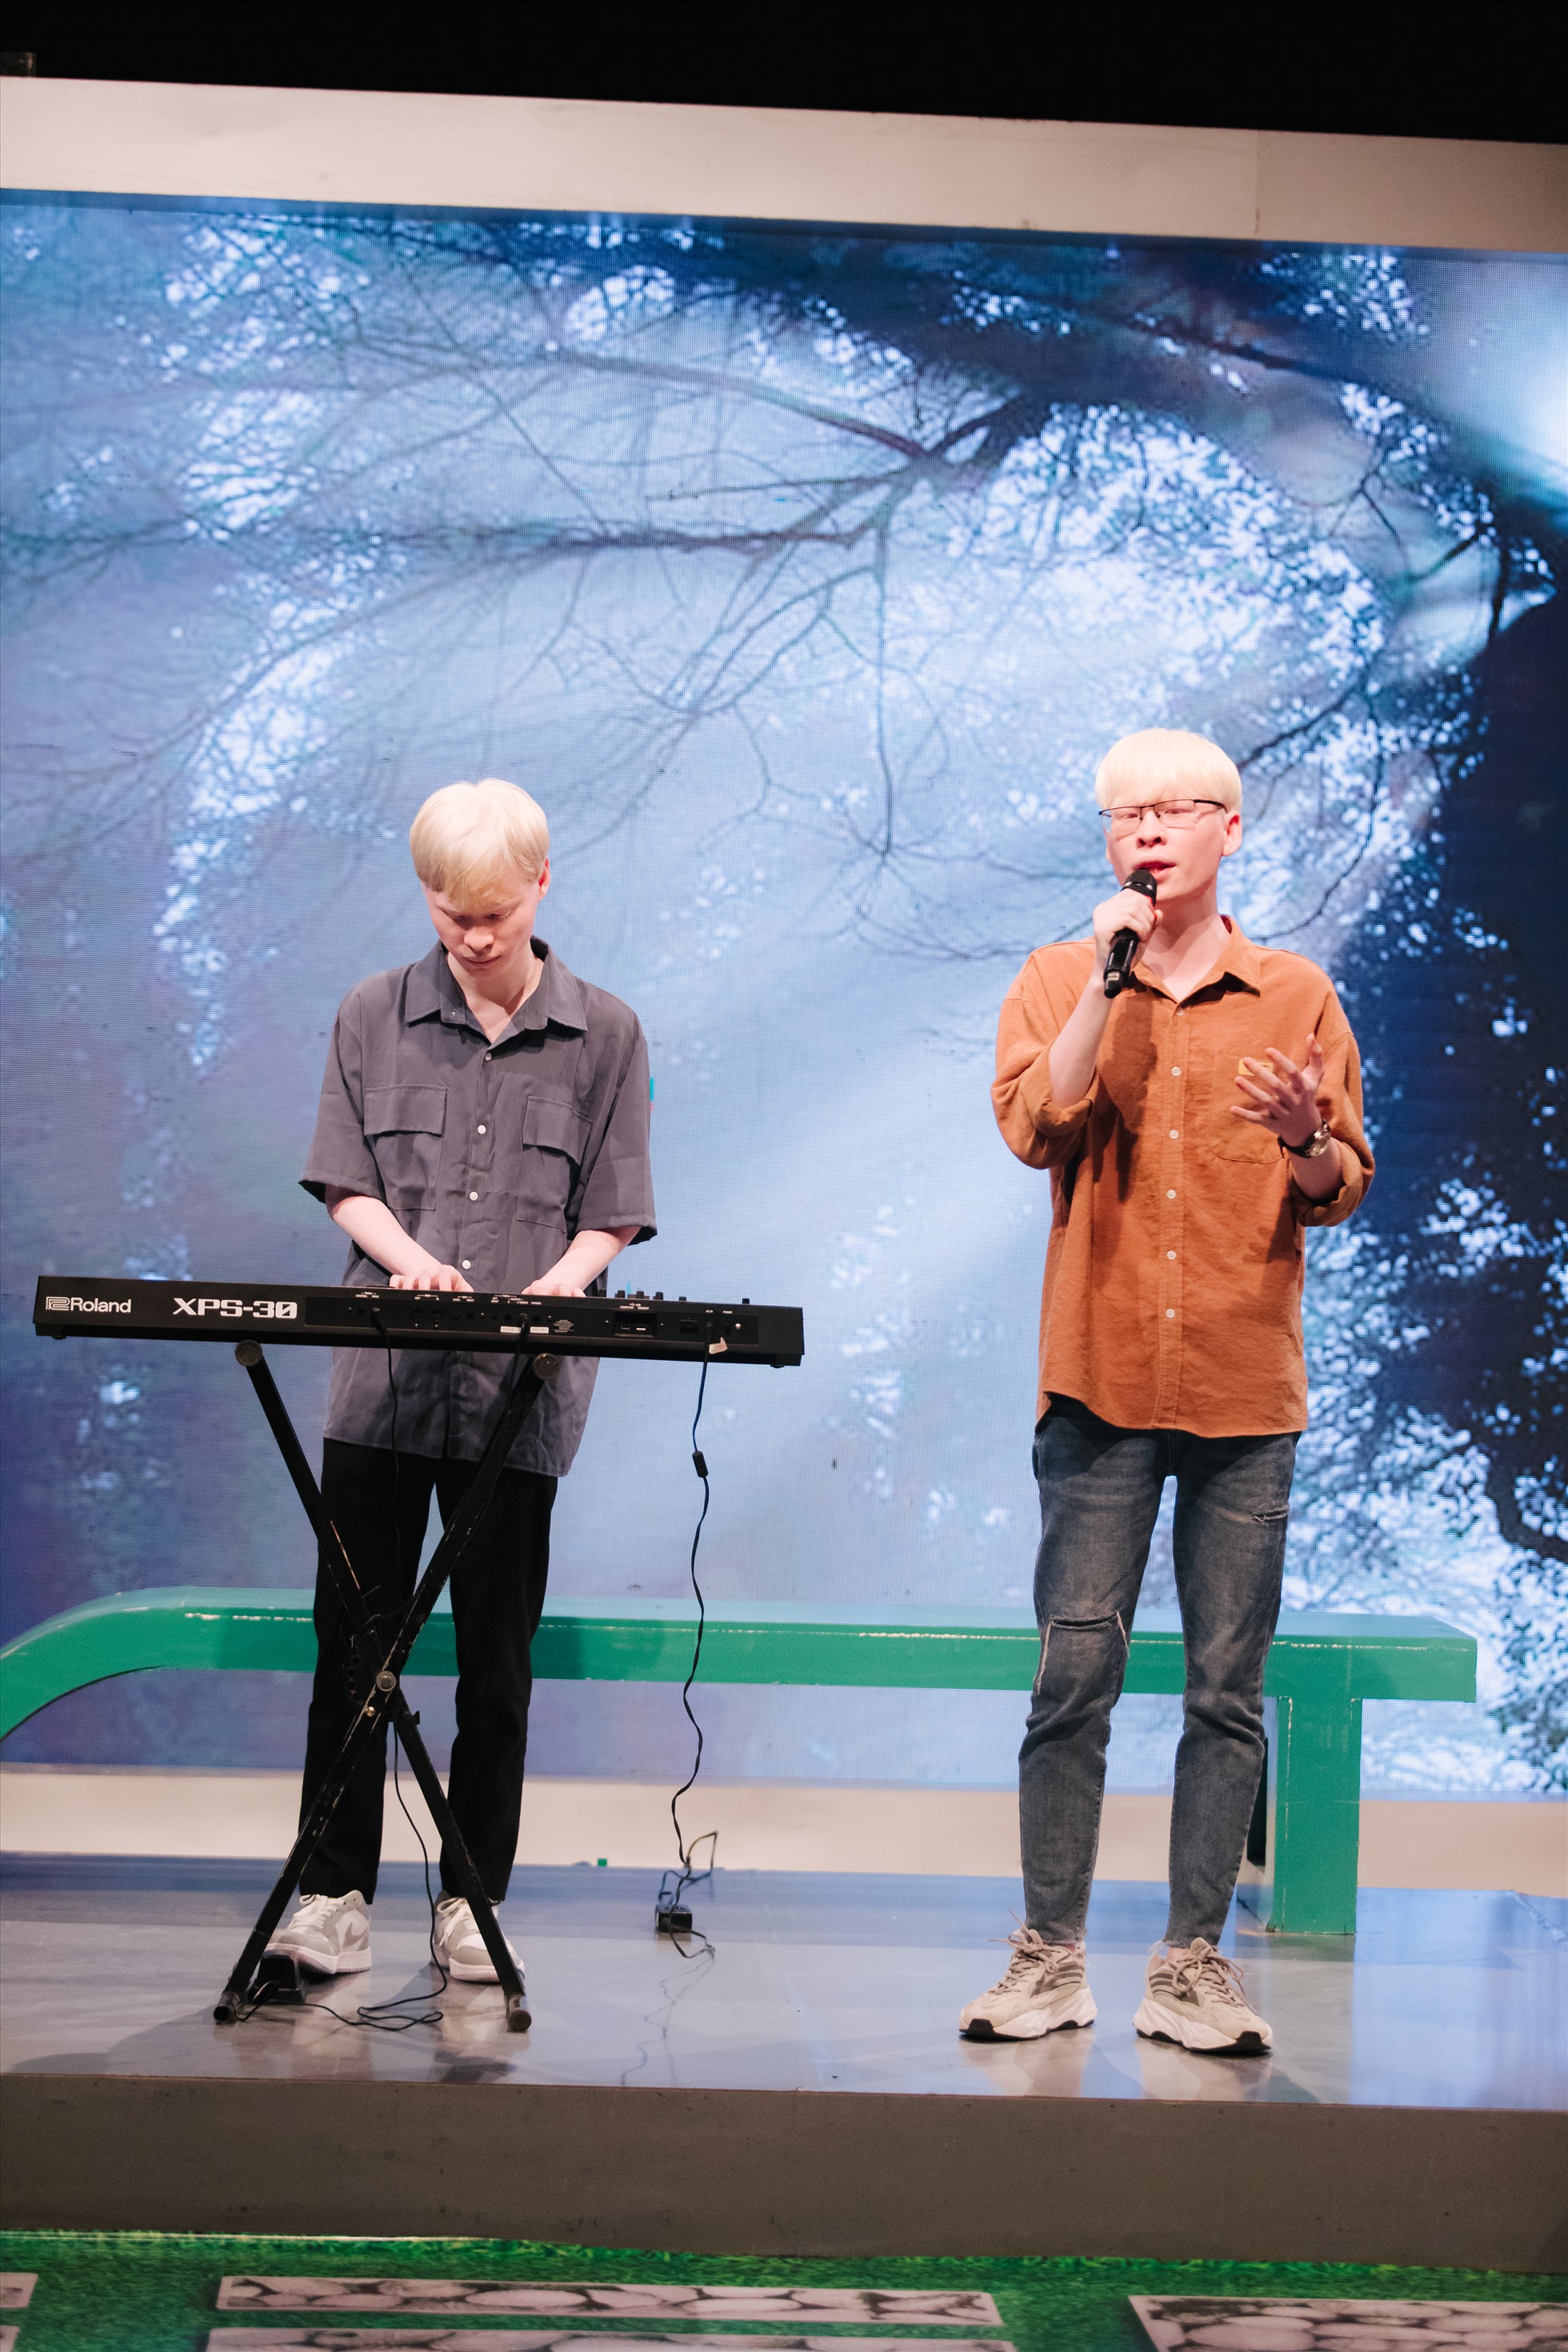 2 anh em Hùng - Huy còn được hiện thực ước mơ trình diễn trên sân khấu với chủ đề của chương trình “Ngày từ đêm trắng sinh ra”. Ảnh: VTV